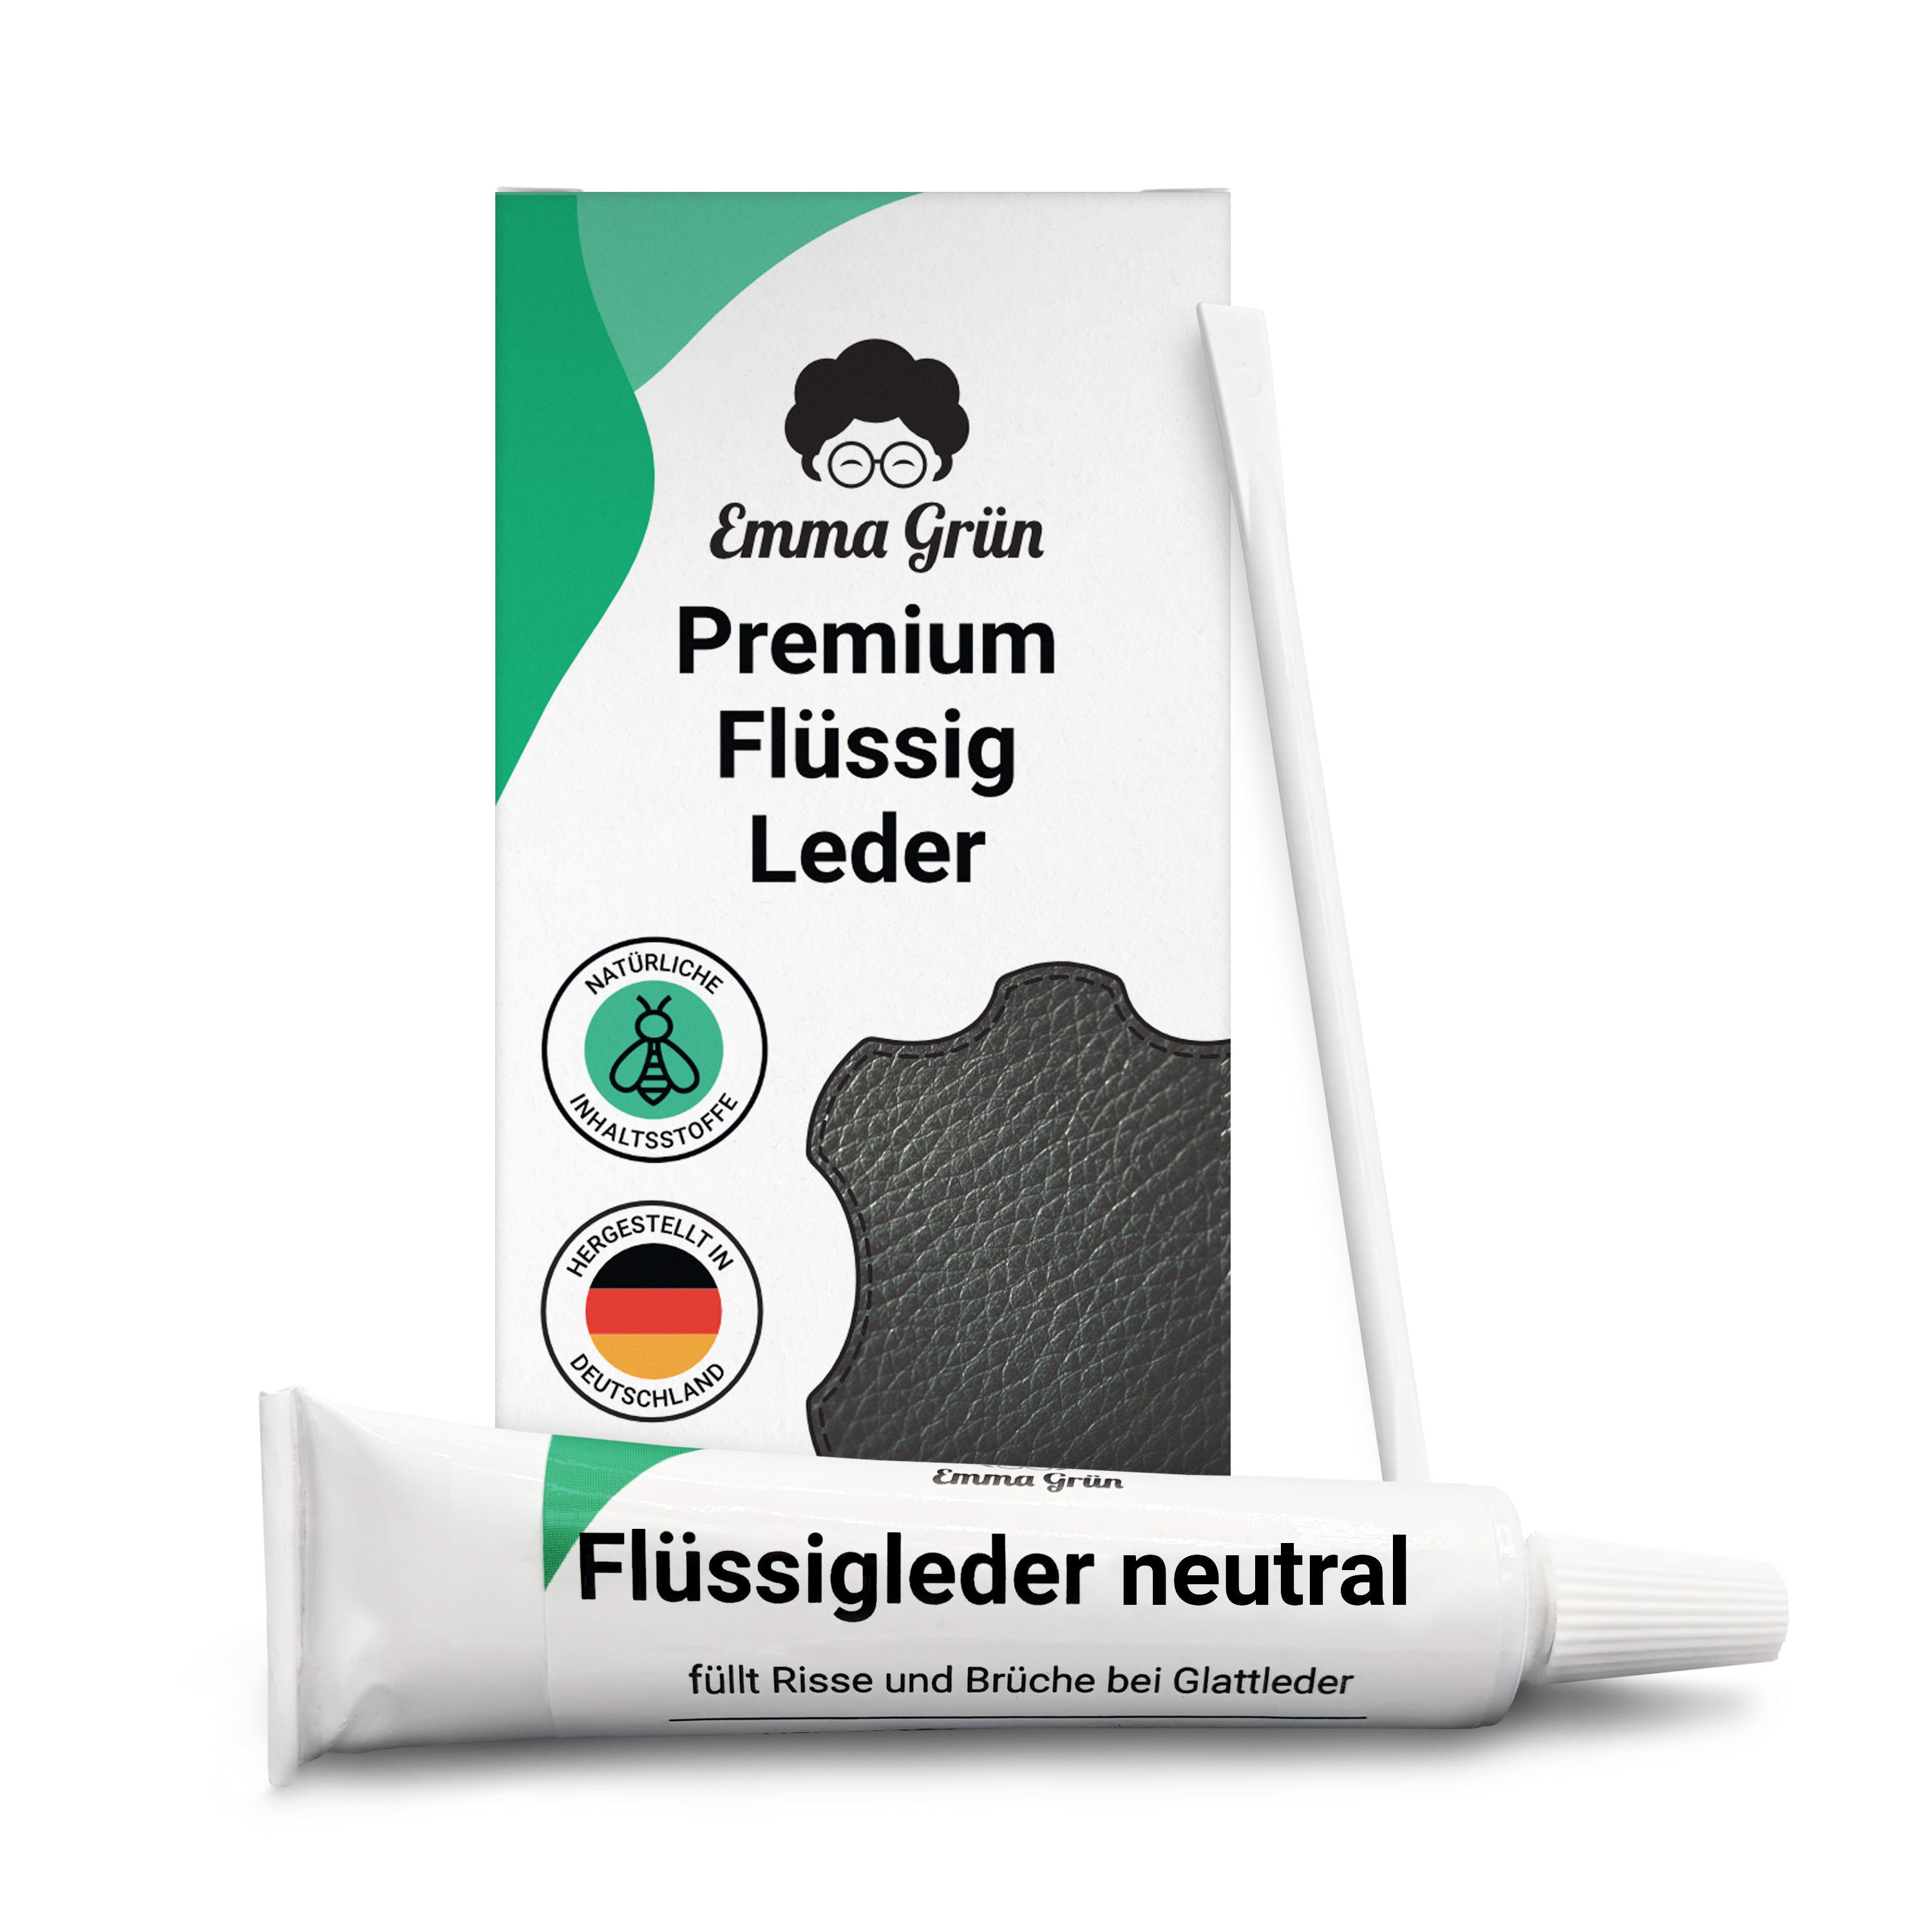 Liquid leather repair set neutral 7 ml, against small cracks, incl. spatula